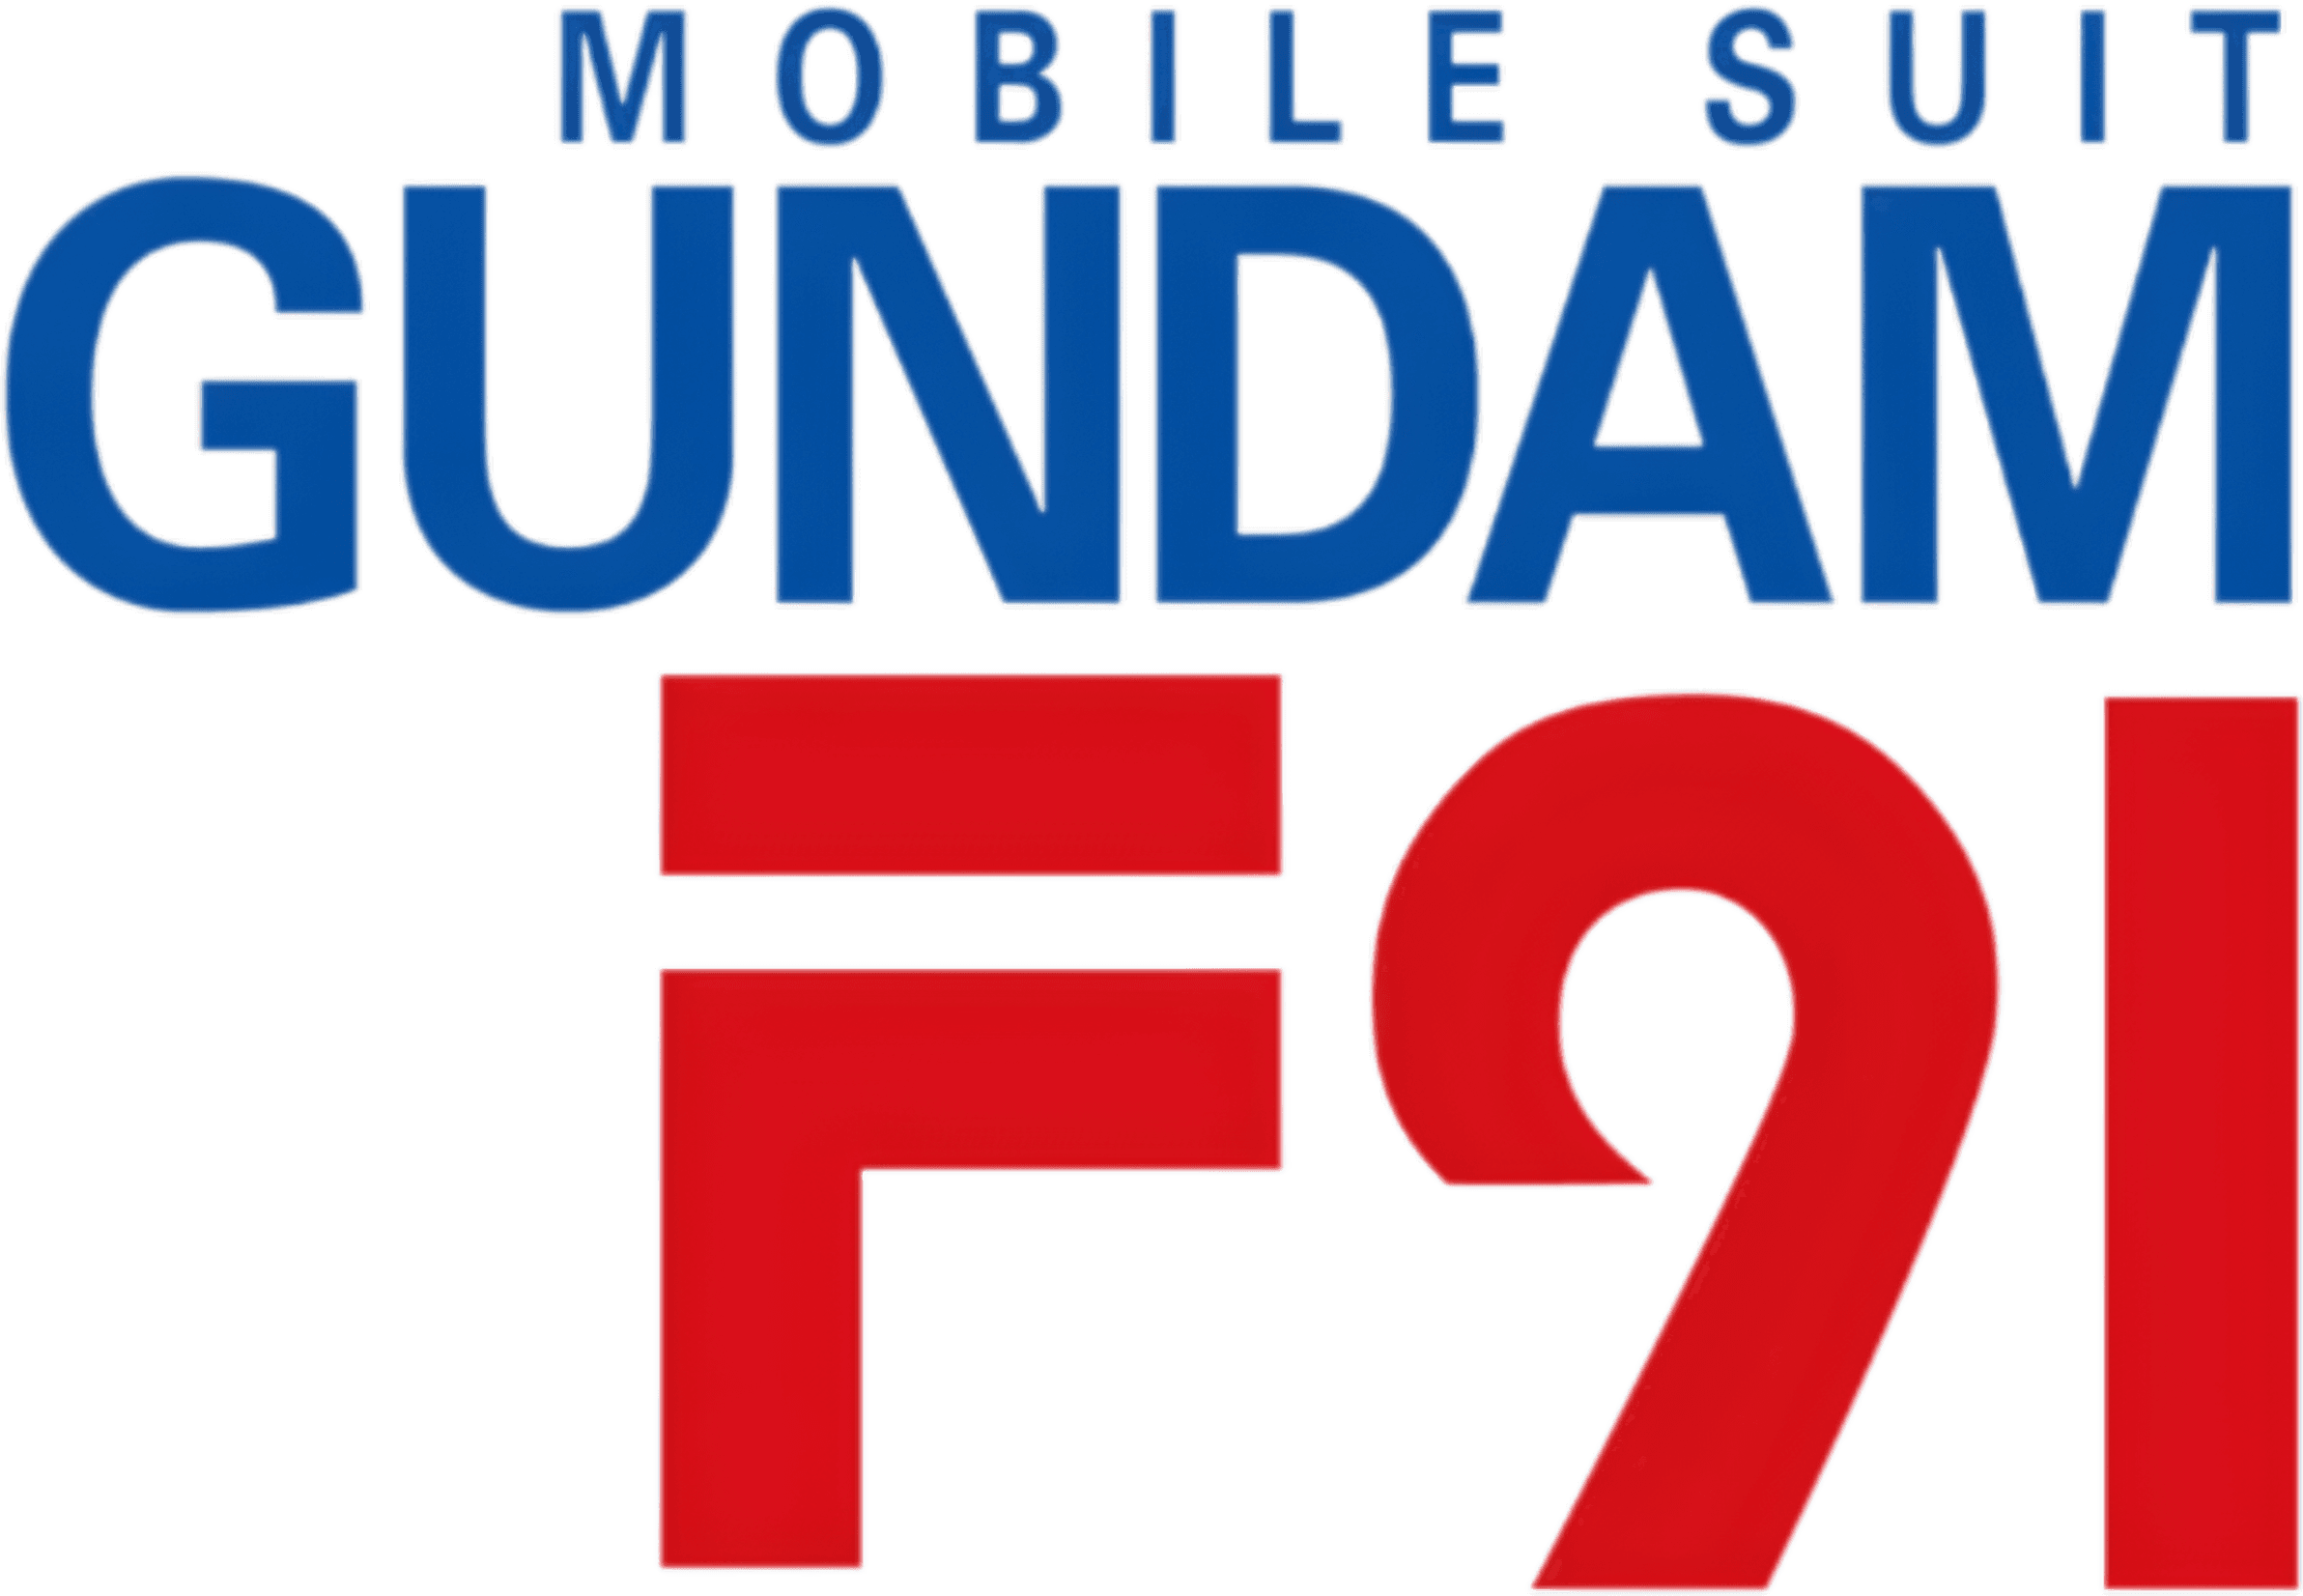 Mobile Suit Gundam F91 logo